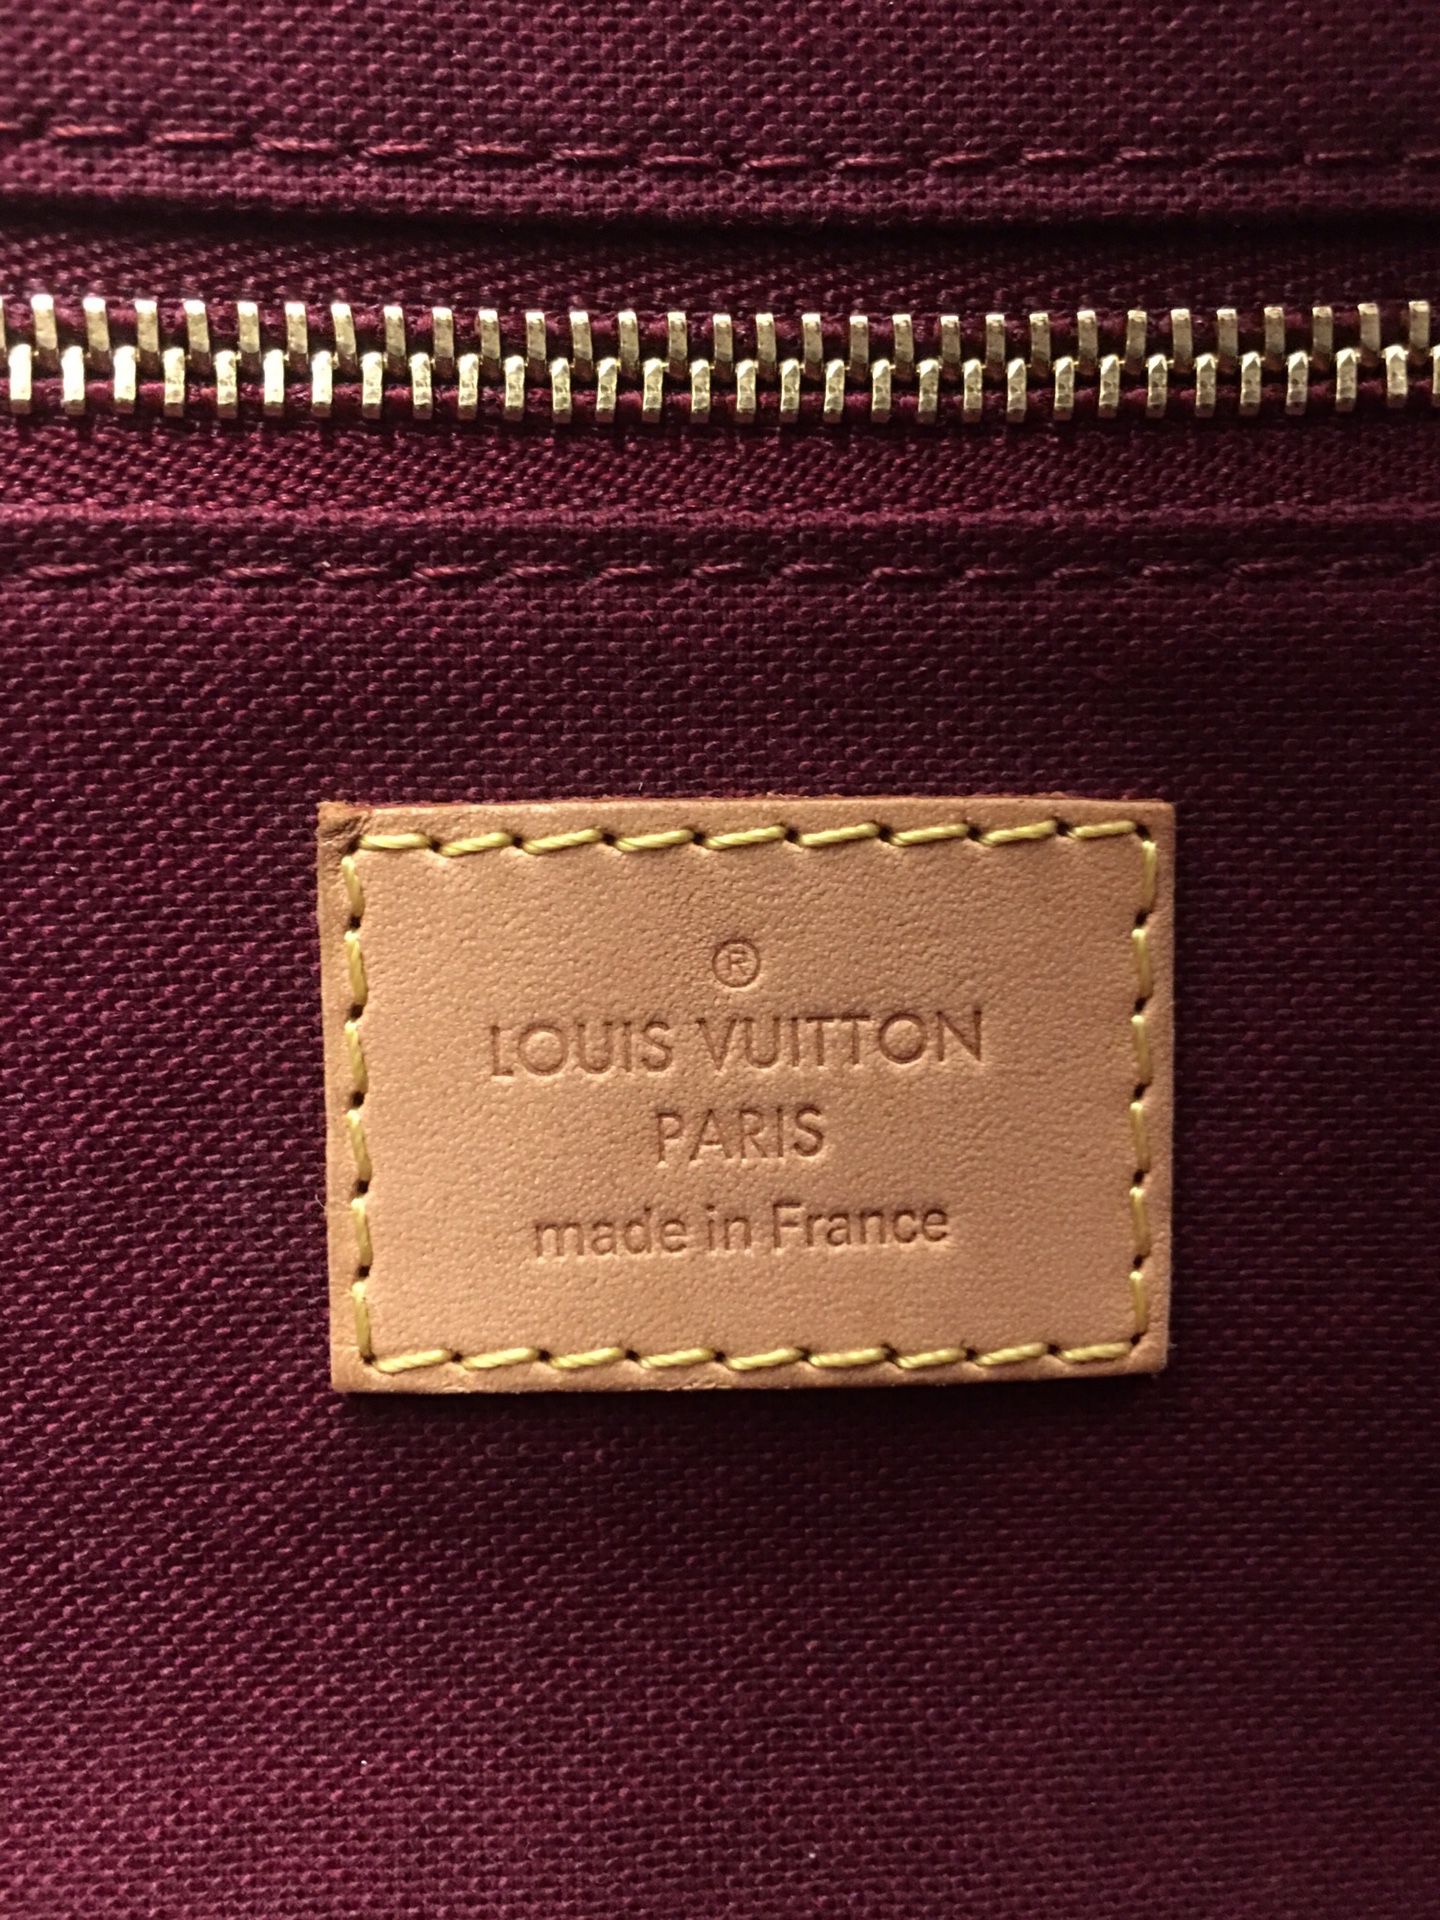 Authentic Louis Vuitton Raspail MM Monogram Shoulder Bag SR0132 for Sale in  Chandler, AZ - OfferUp